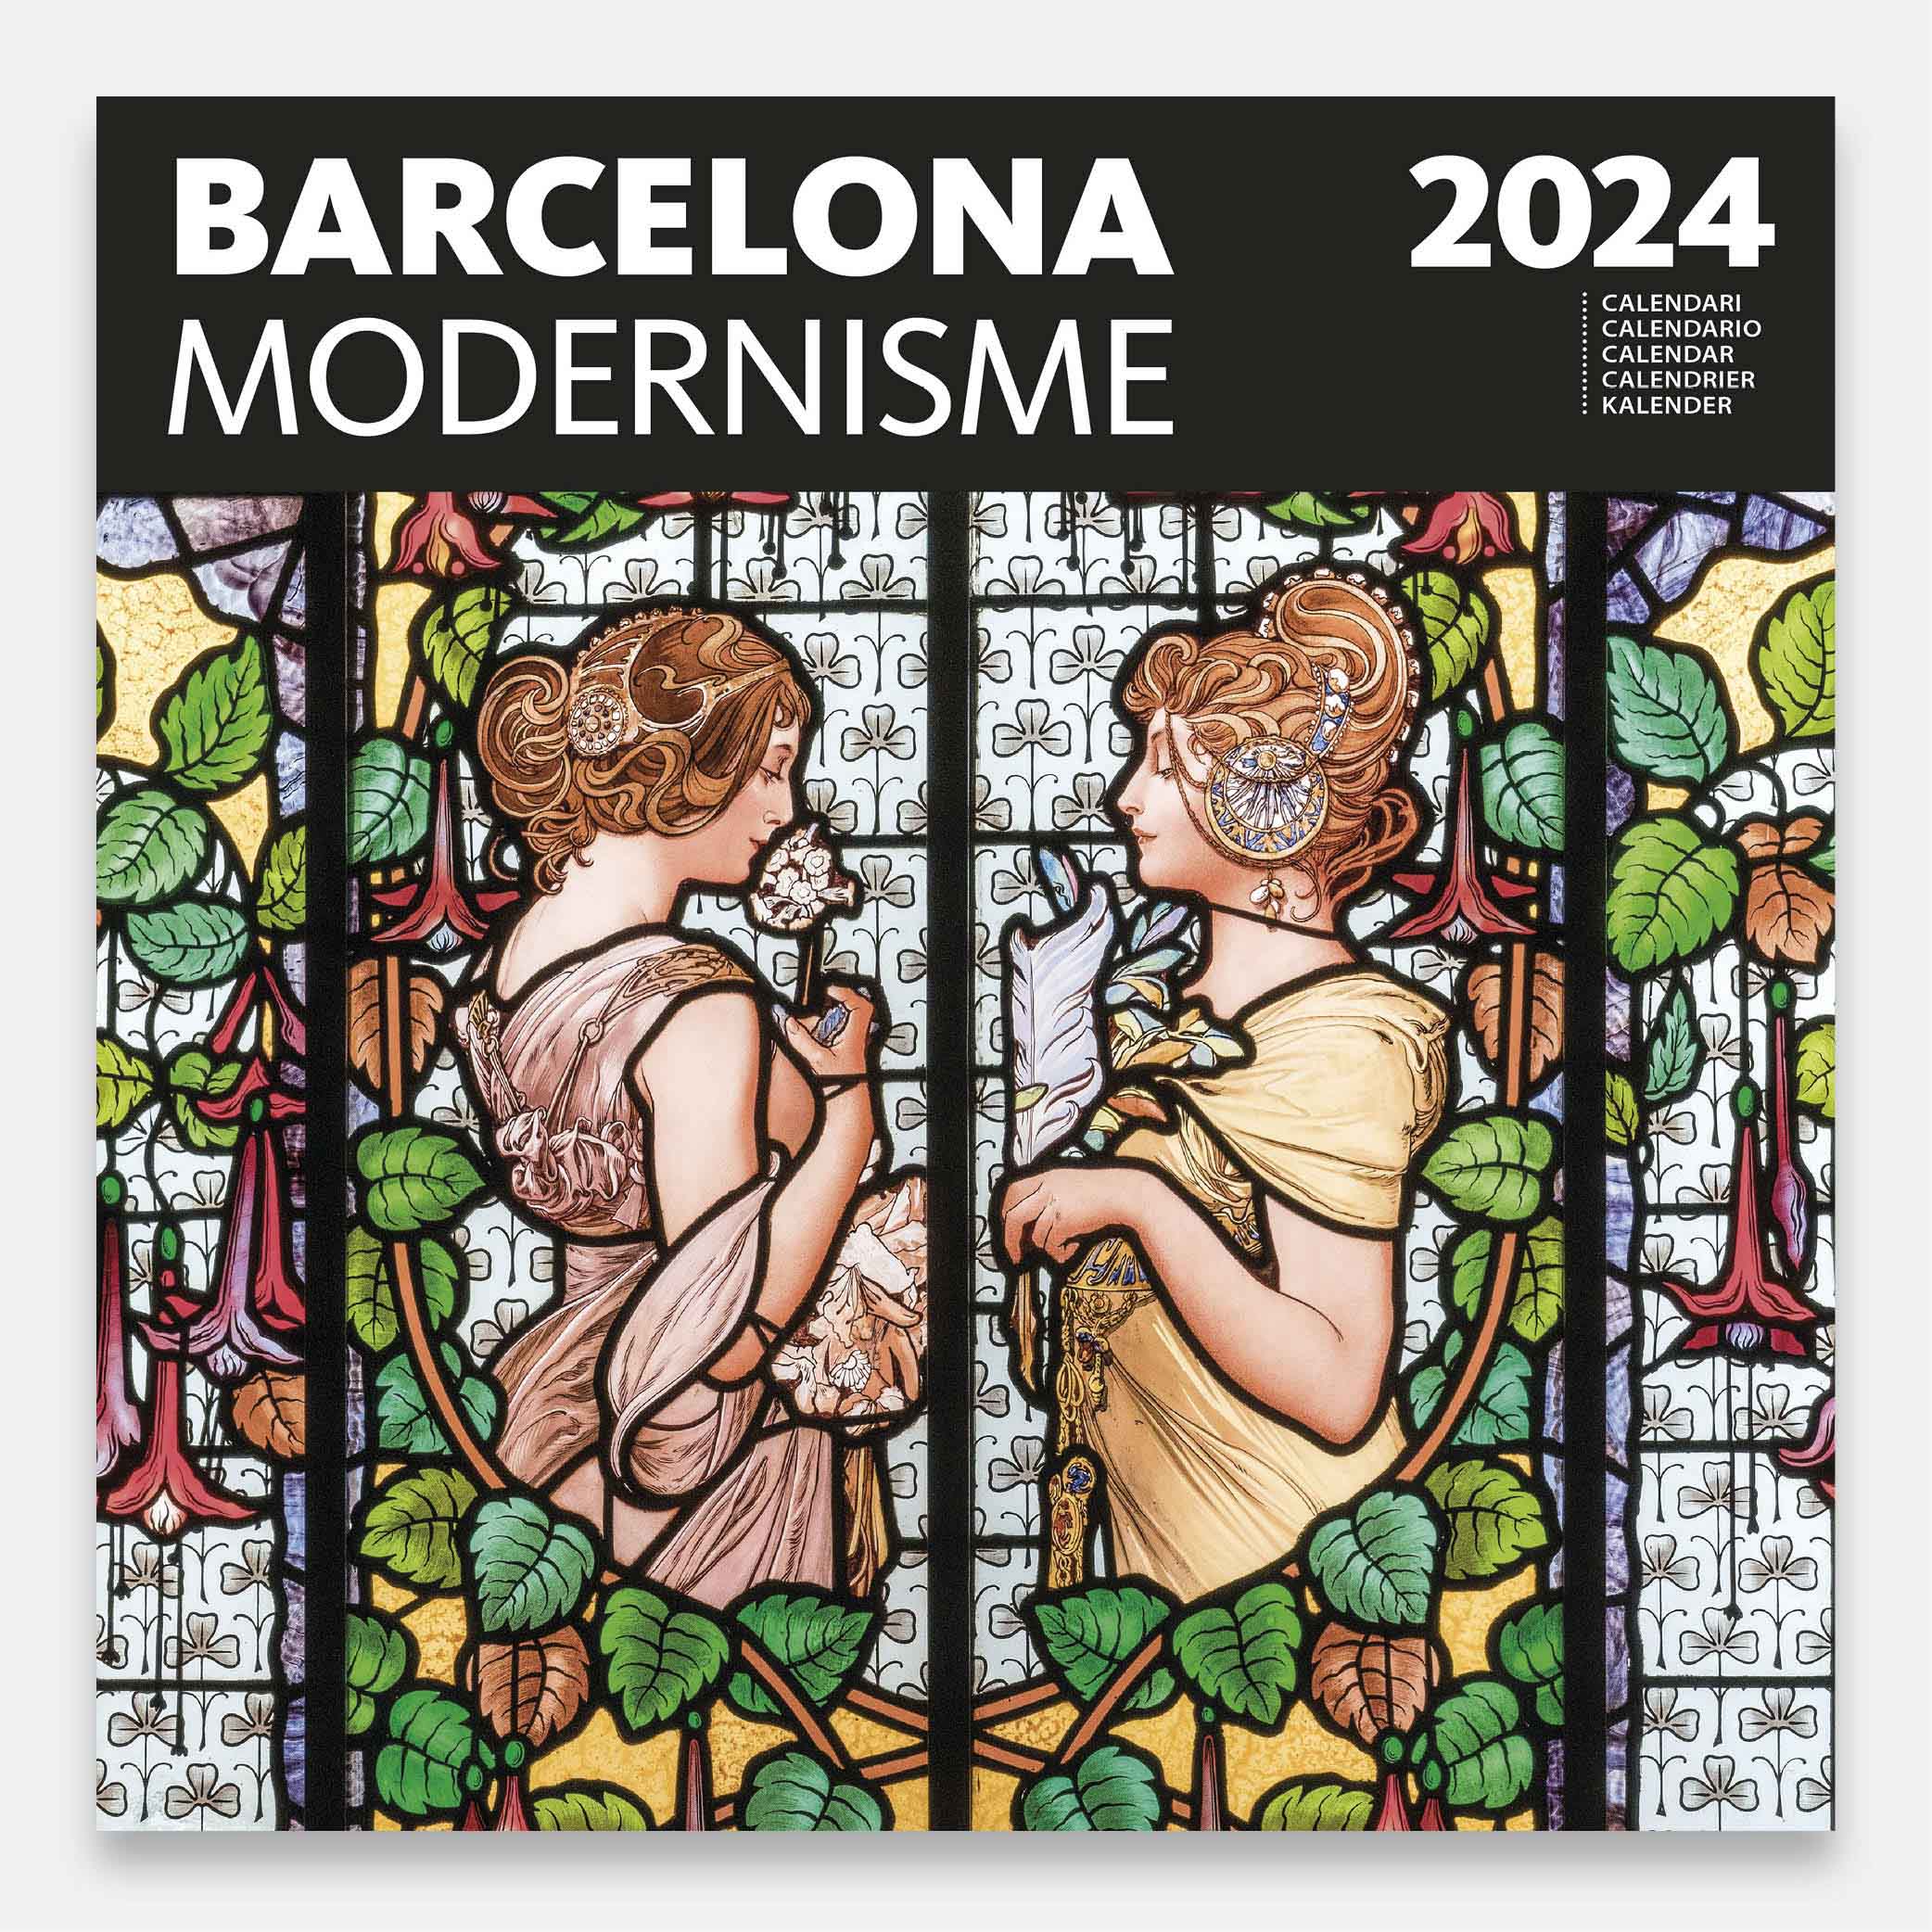 Modernisme 24modg calendario pared 2024 barcelona modernismo modernisme